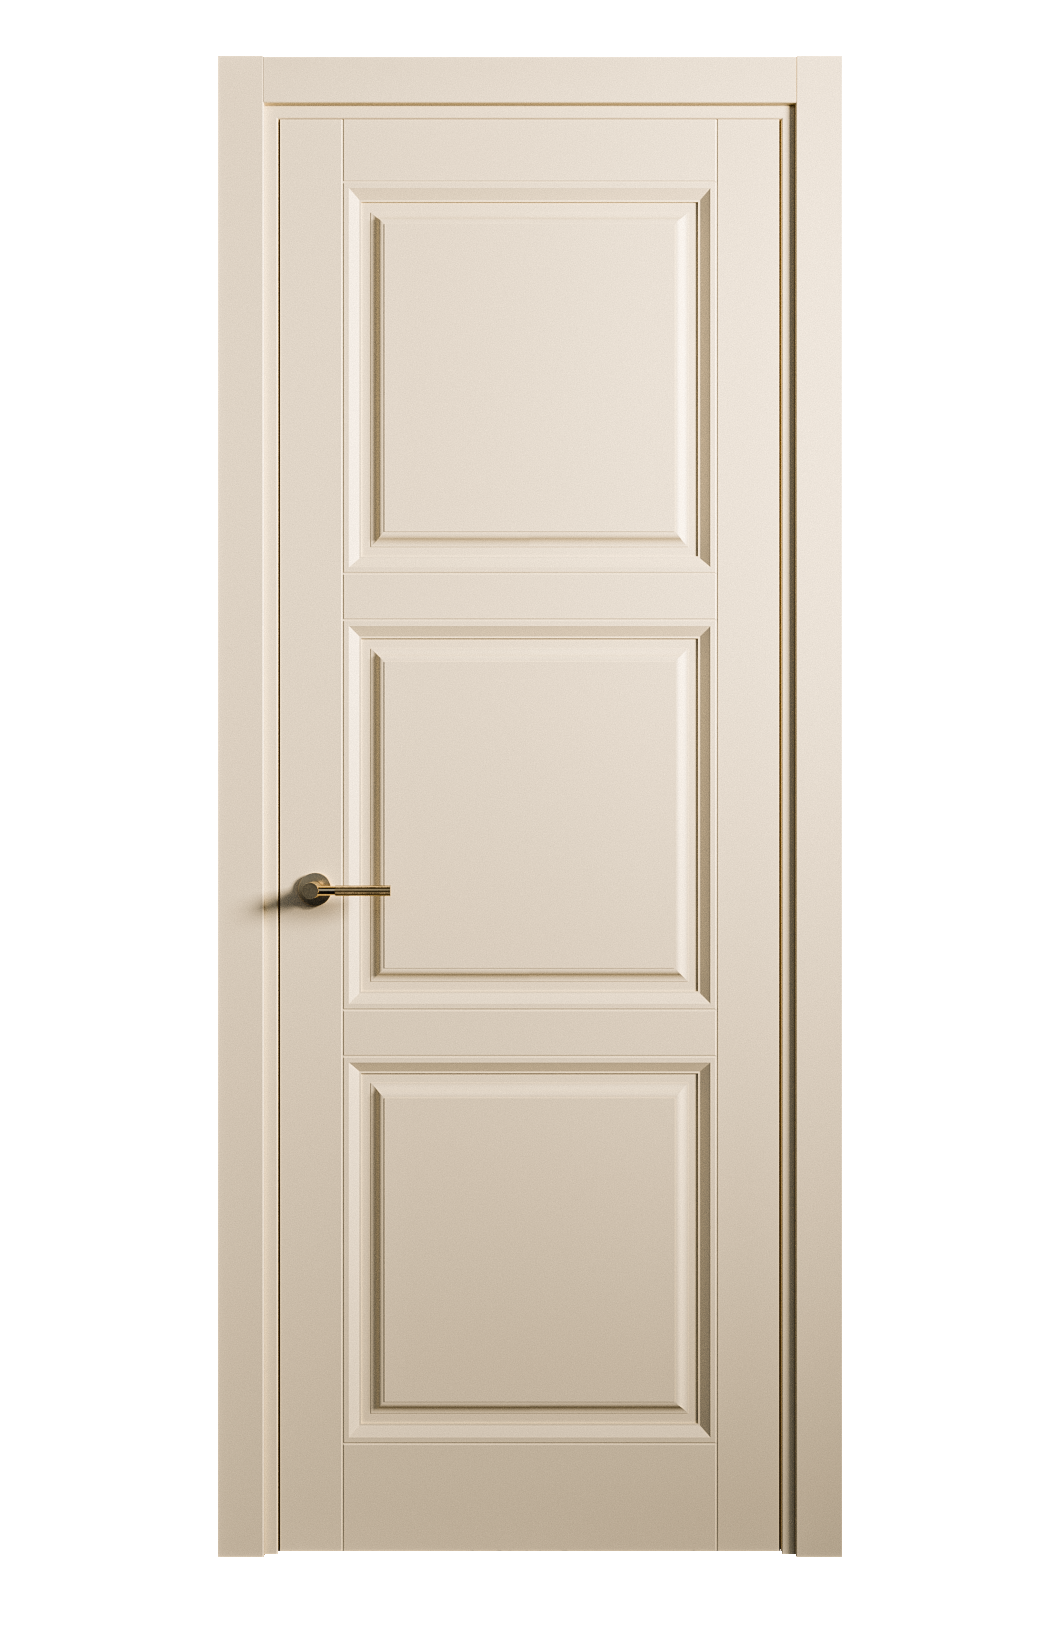 Межкомнатная дверь Venezia-3 глухая эмаль ral 1015 25762